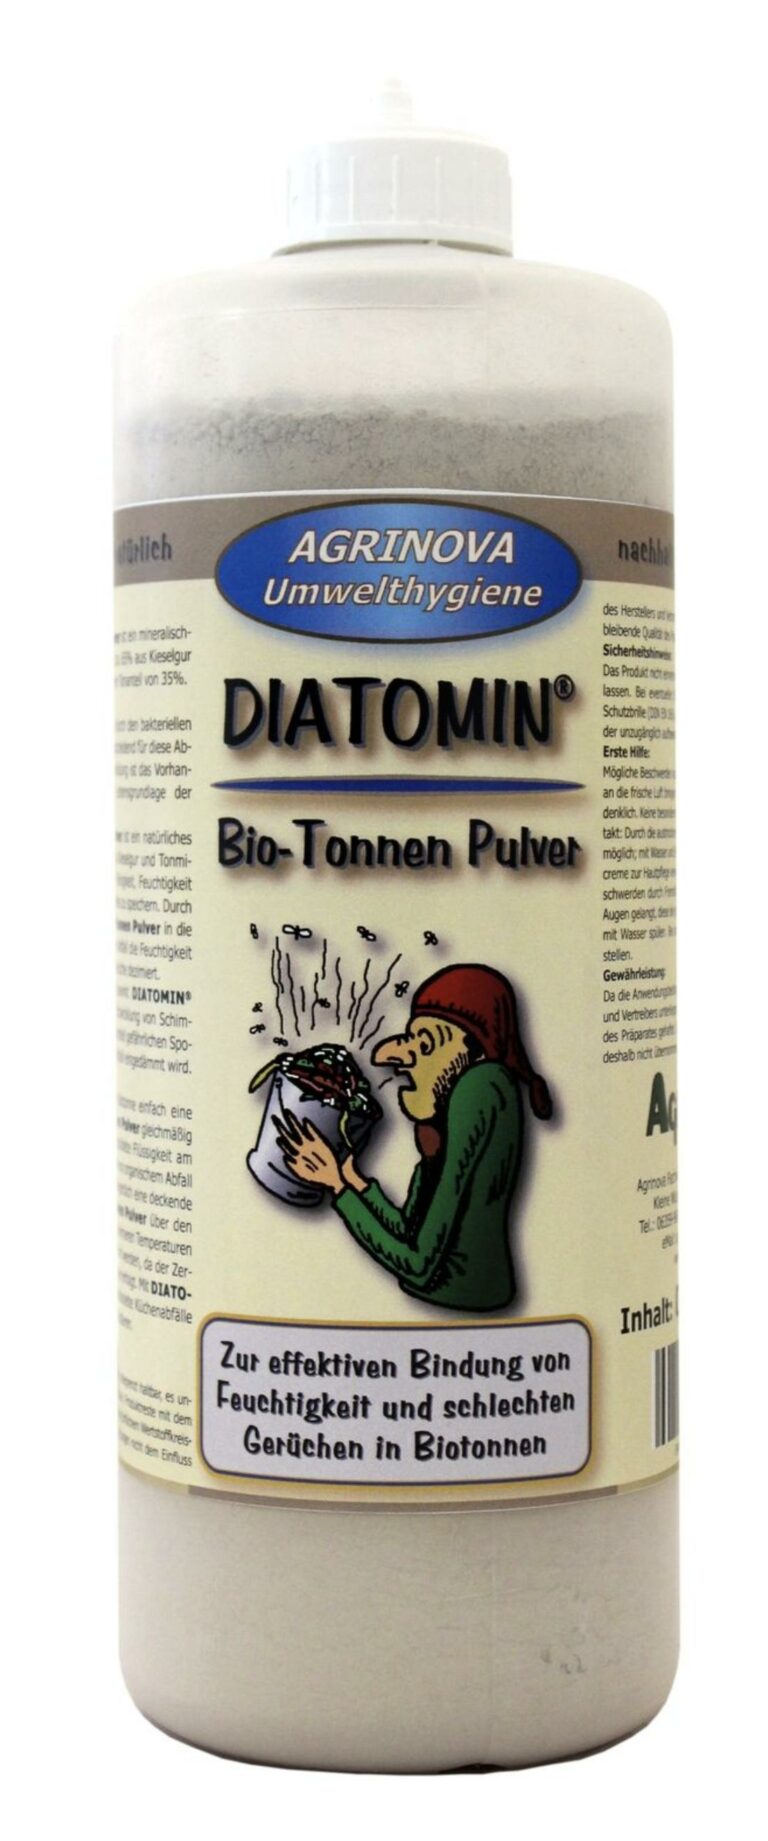 DIATOMIN® Bio-Tonnen Pulver - 500 g